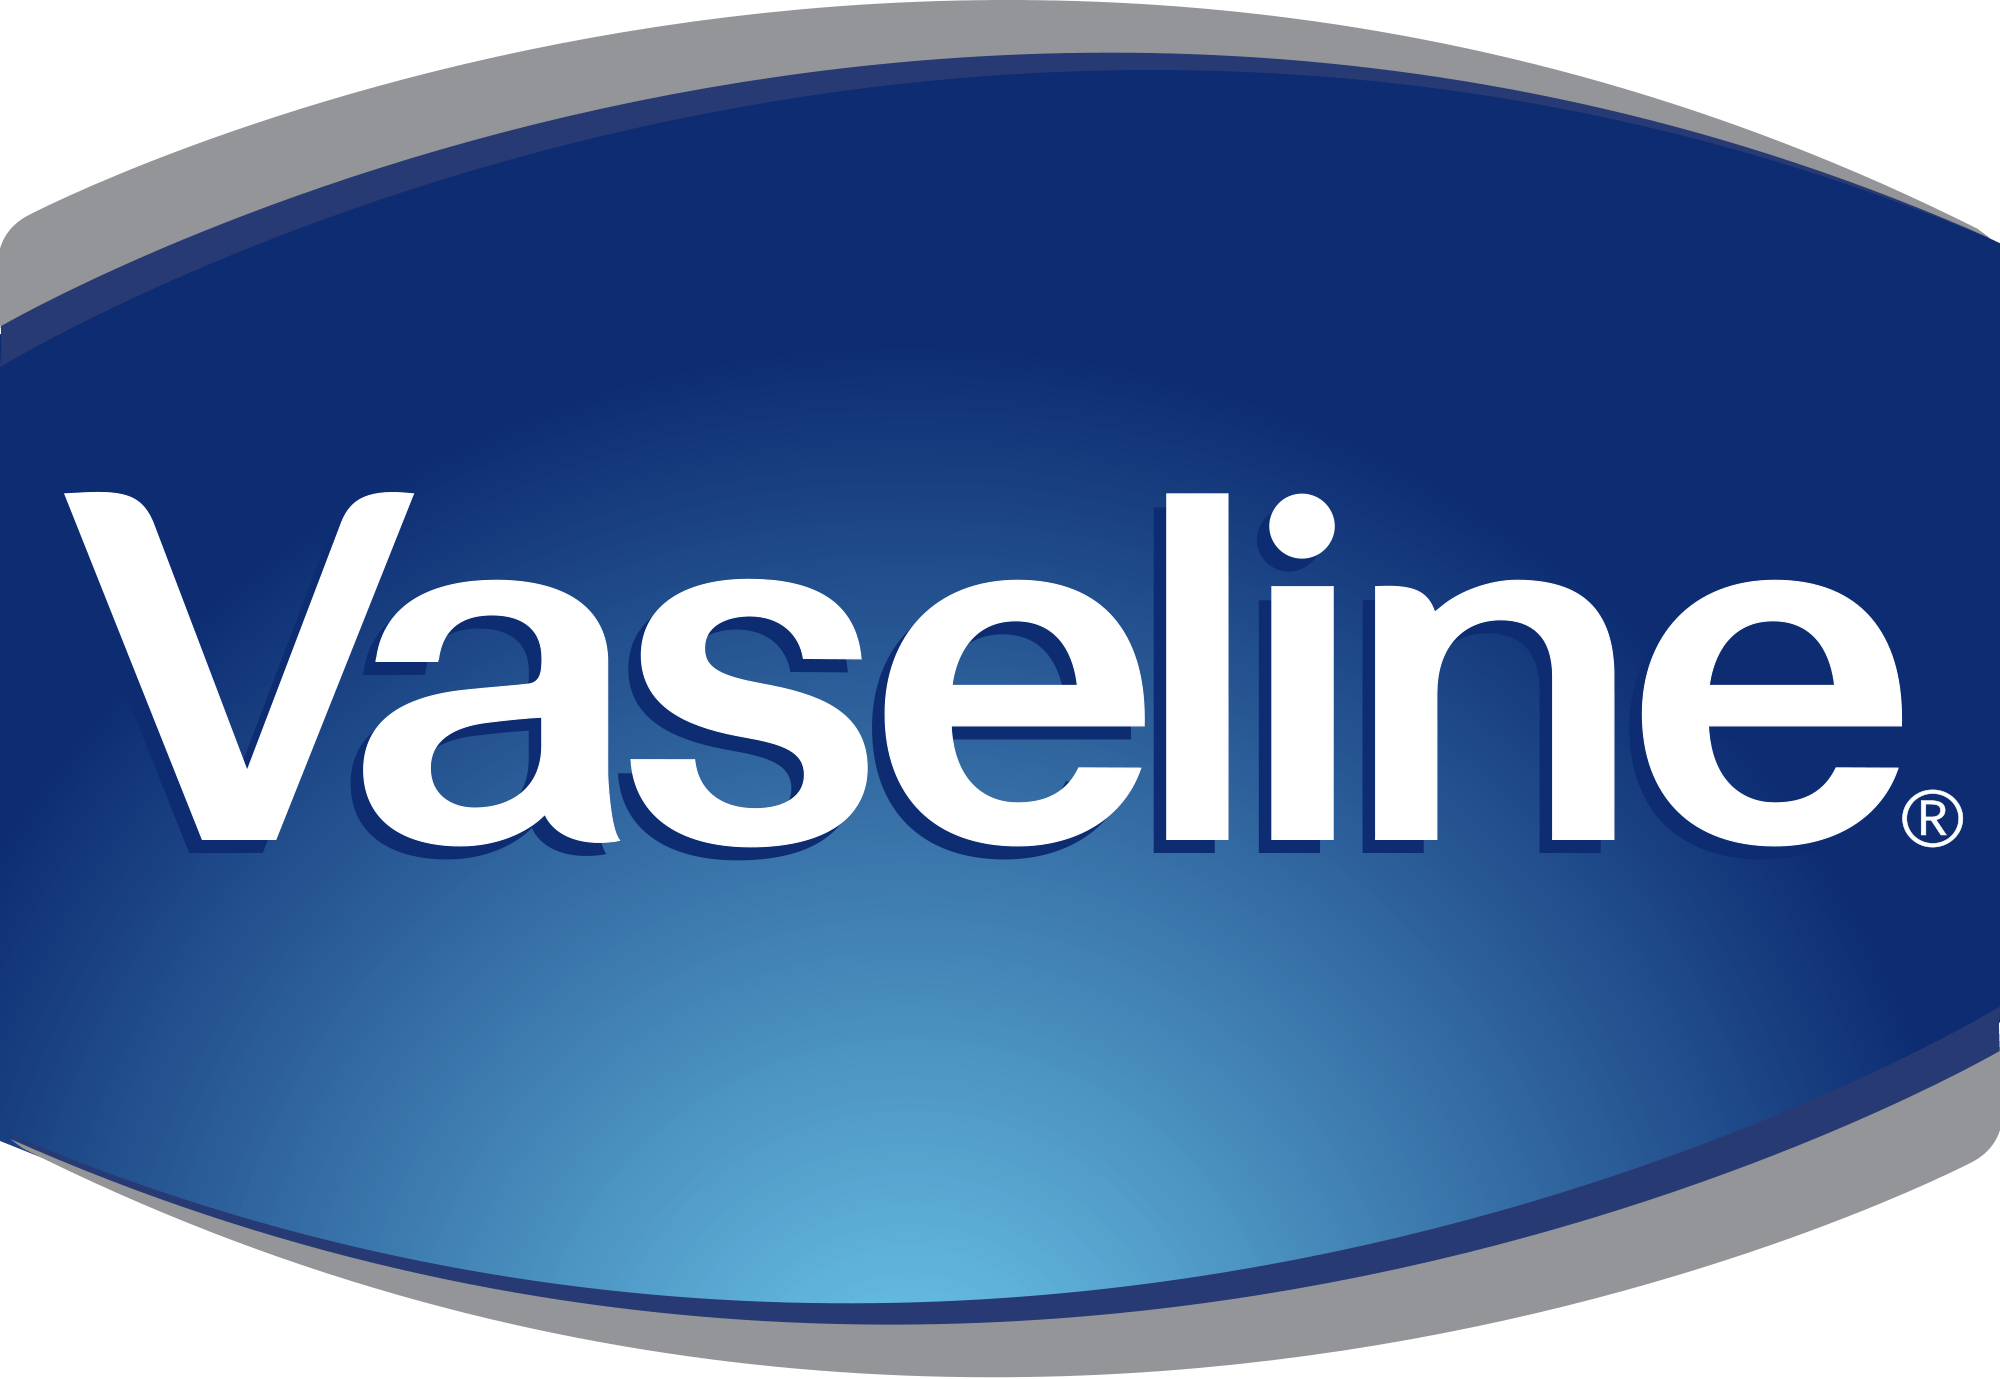 Blue Oval Brand Logo - File:Vaseline Logo.svg - Wikimedia Commons